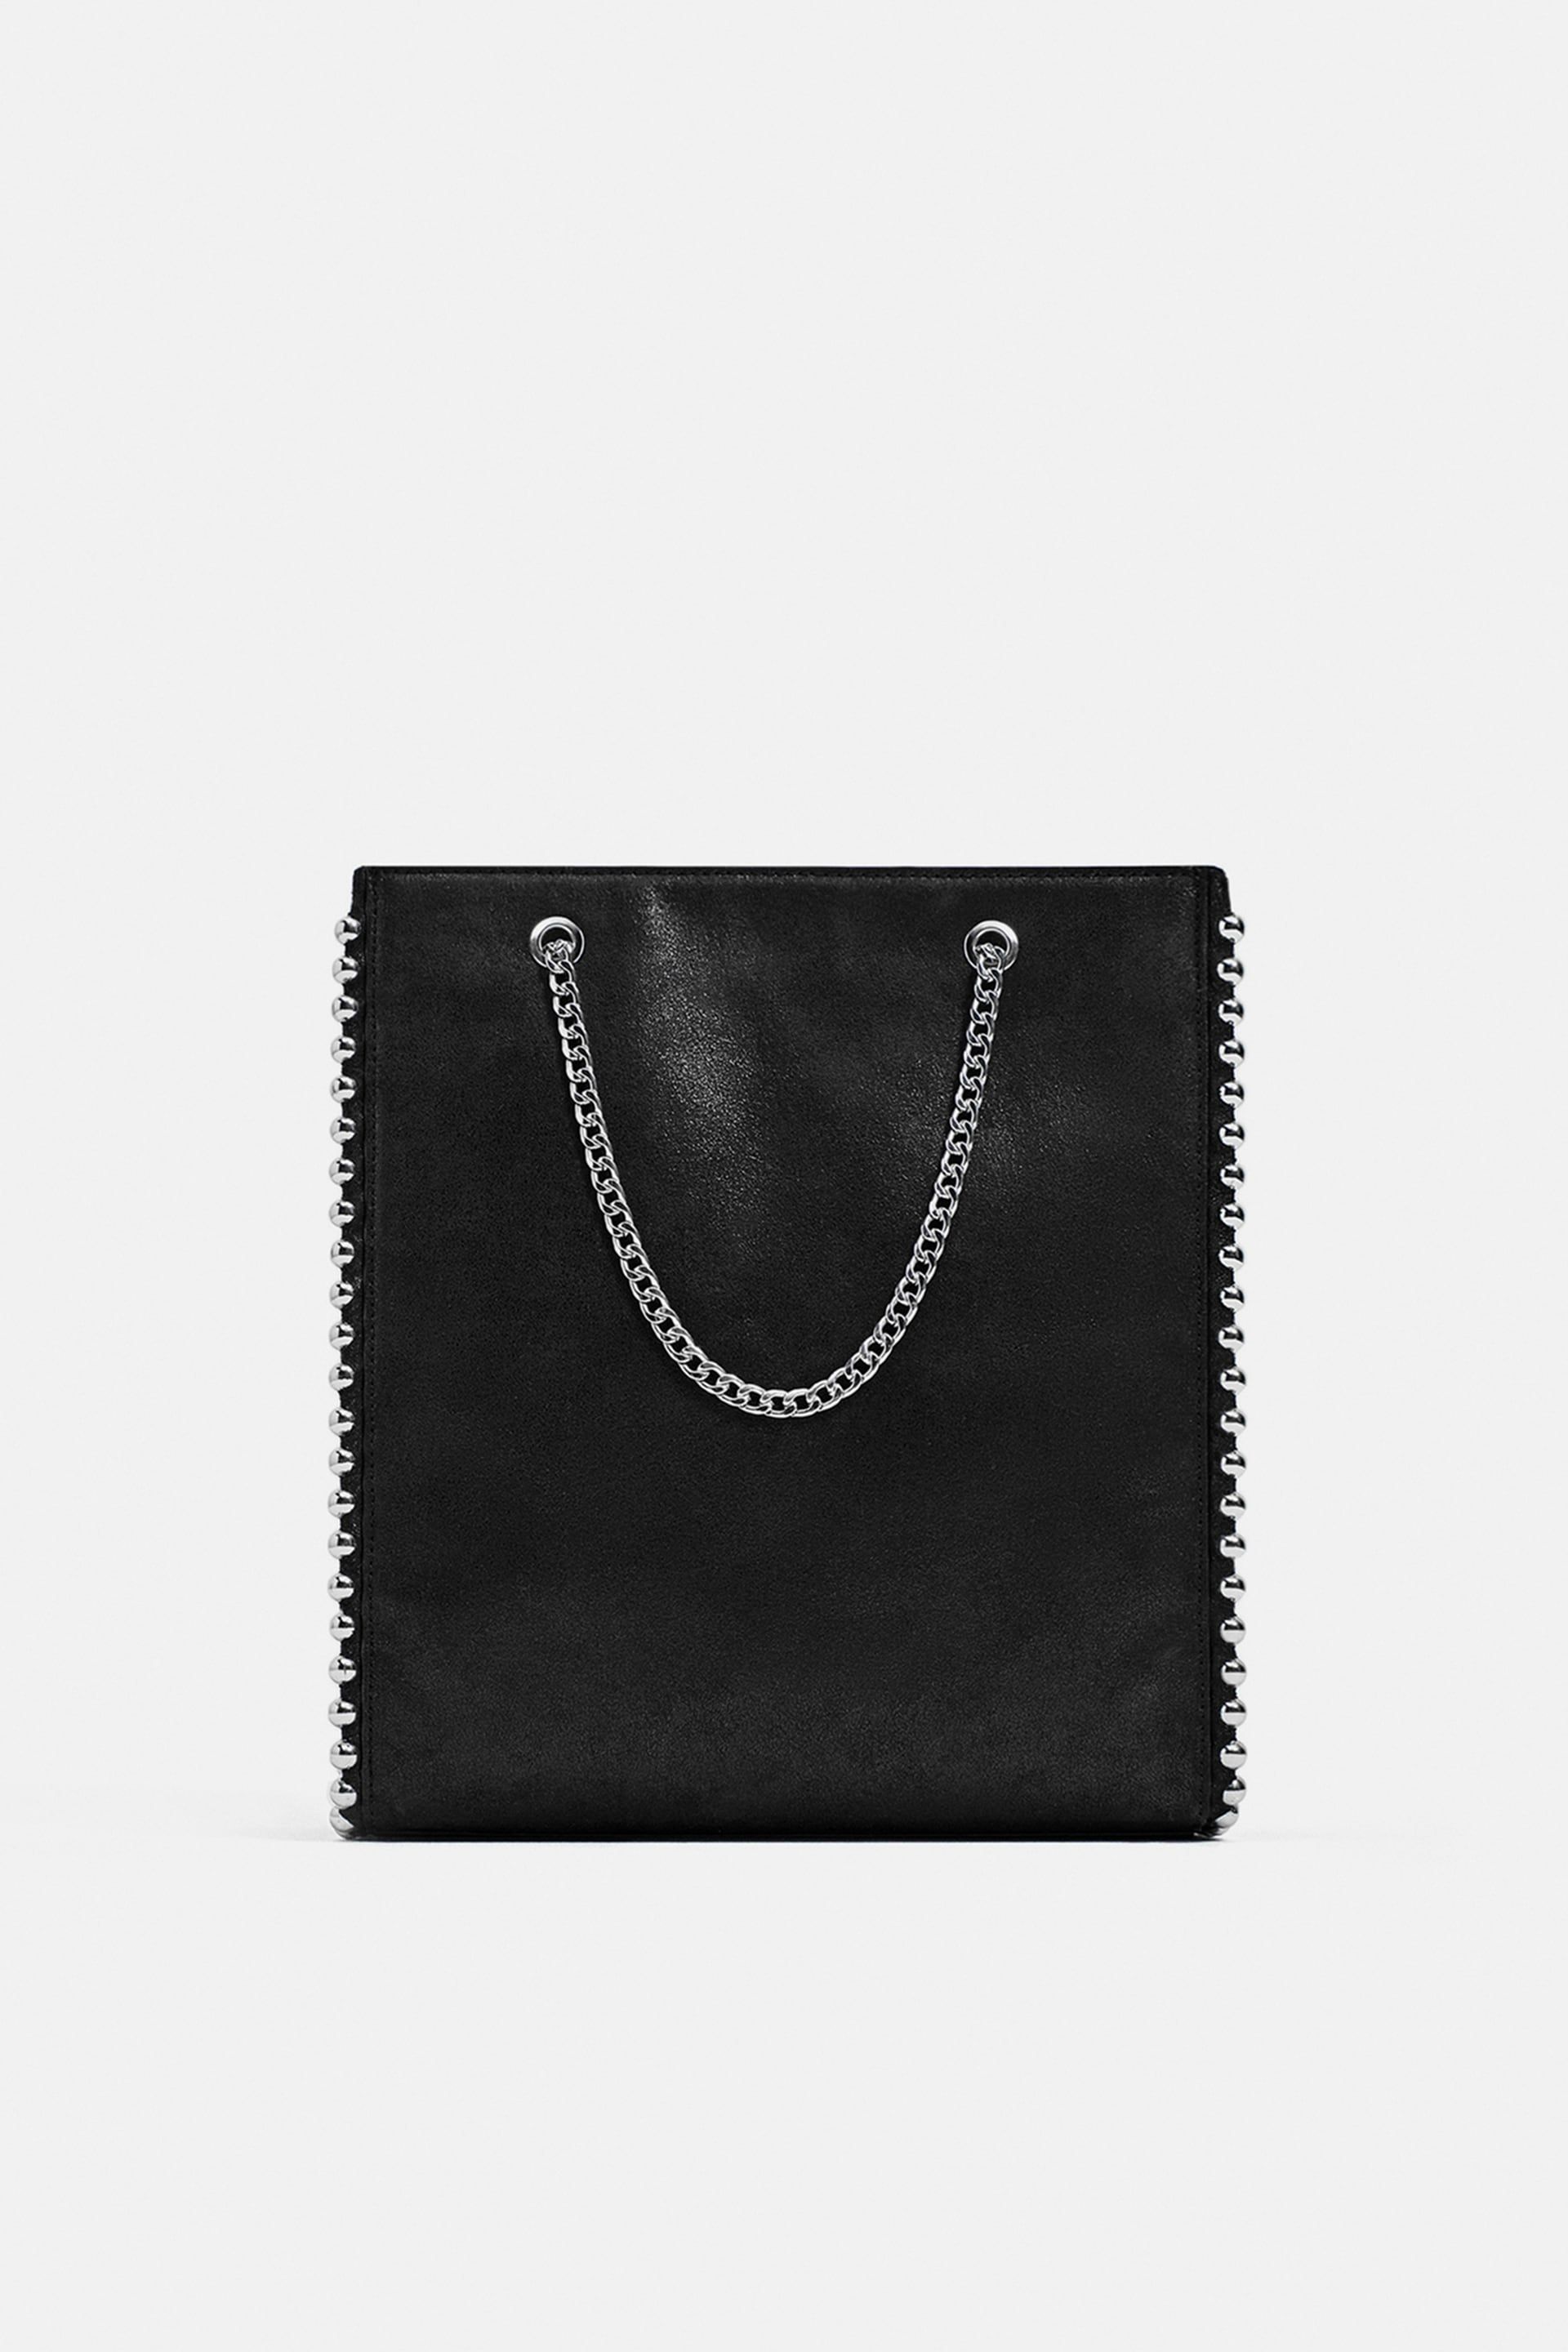 Por qué este bolso de Zara sigue nueva colección?